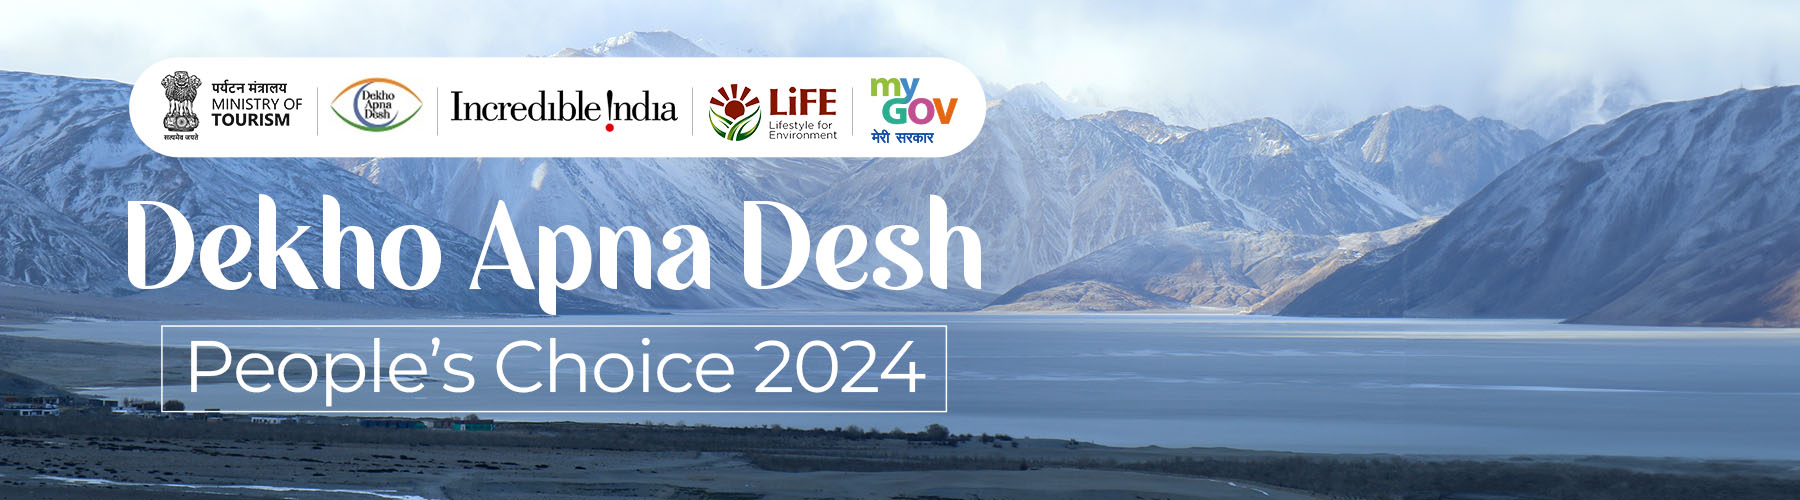 Dekho Apna Desh, People’s Choice 2024